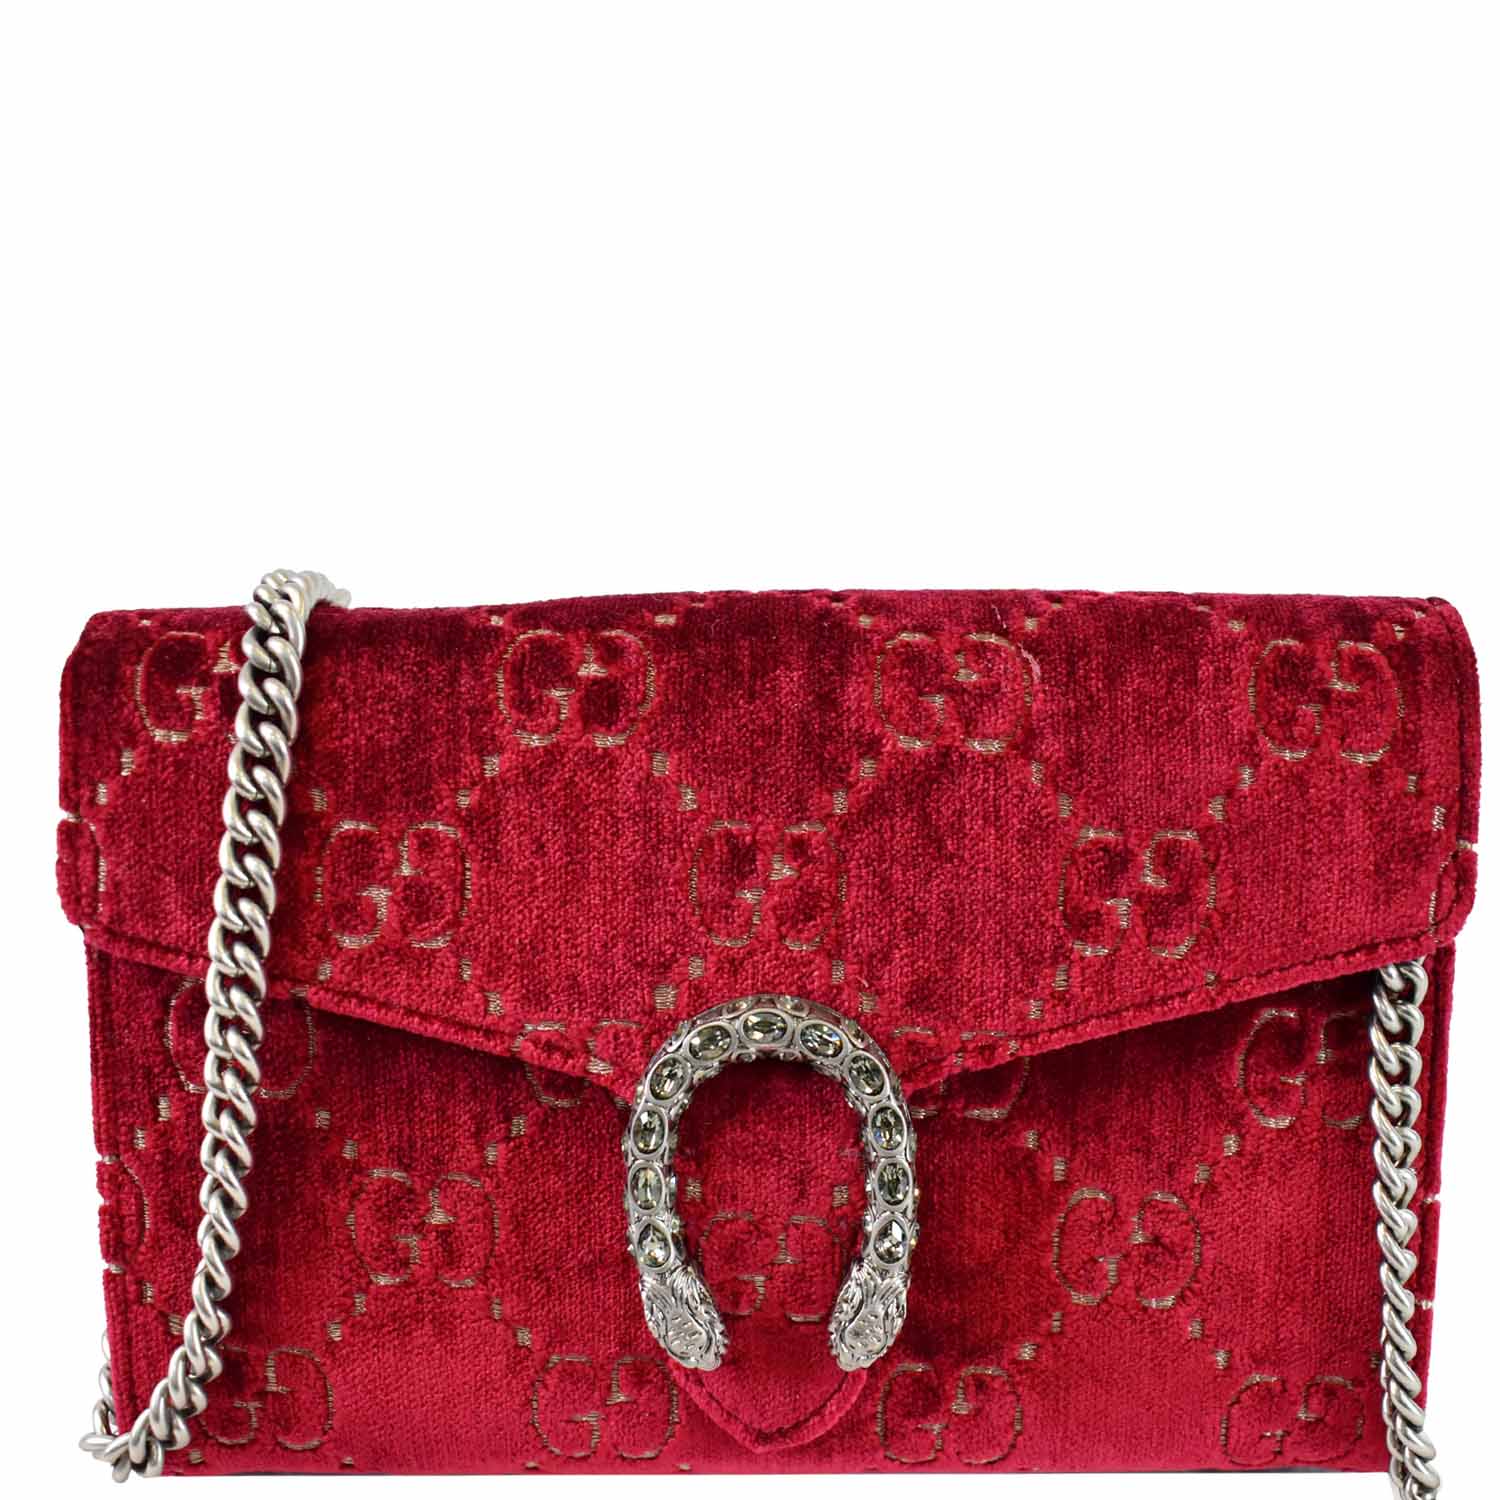 Gucci Dionysus Velvet Super Mini Bag  Gucci dionysus, Bags, Gucci handbags